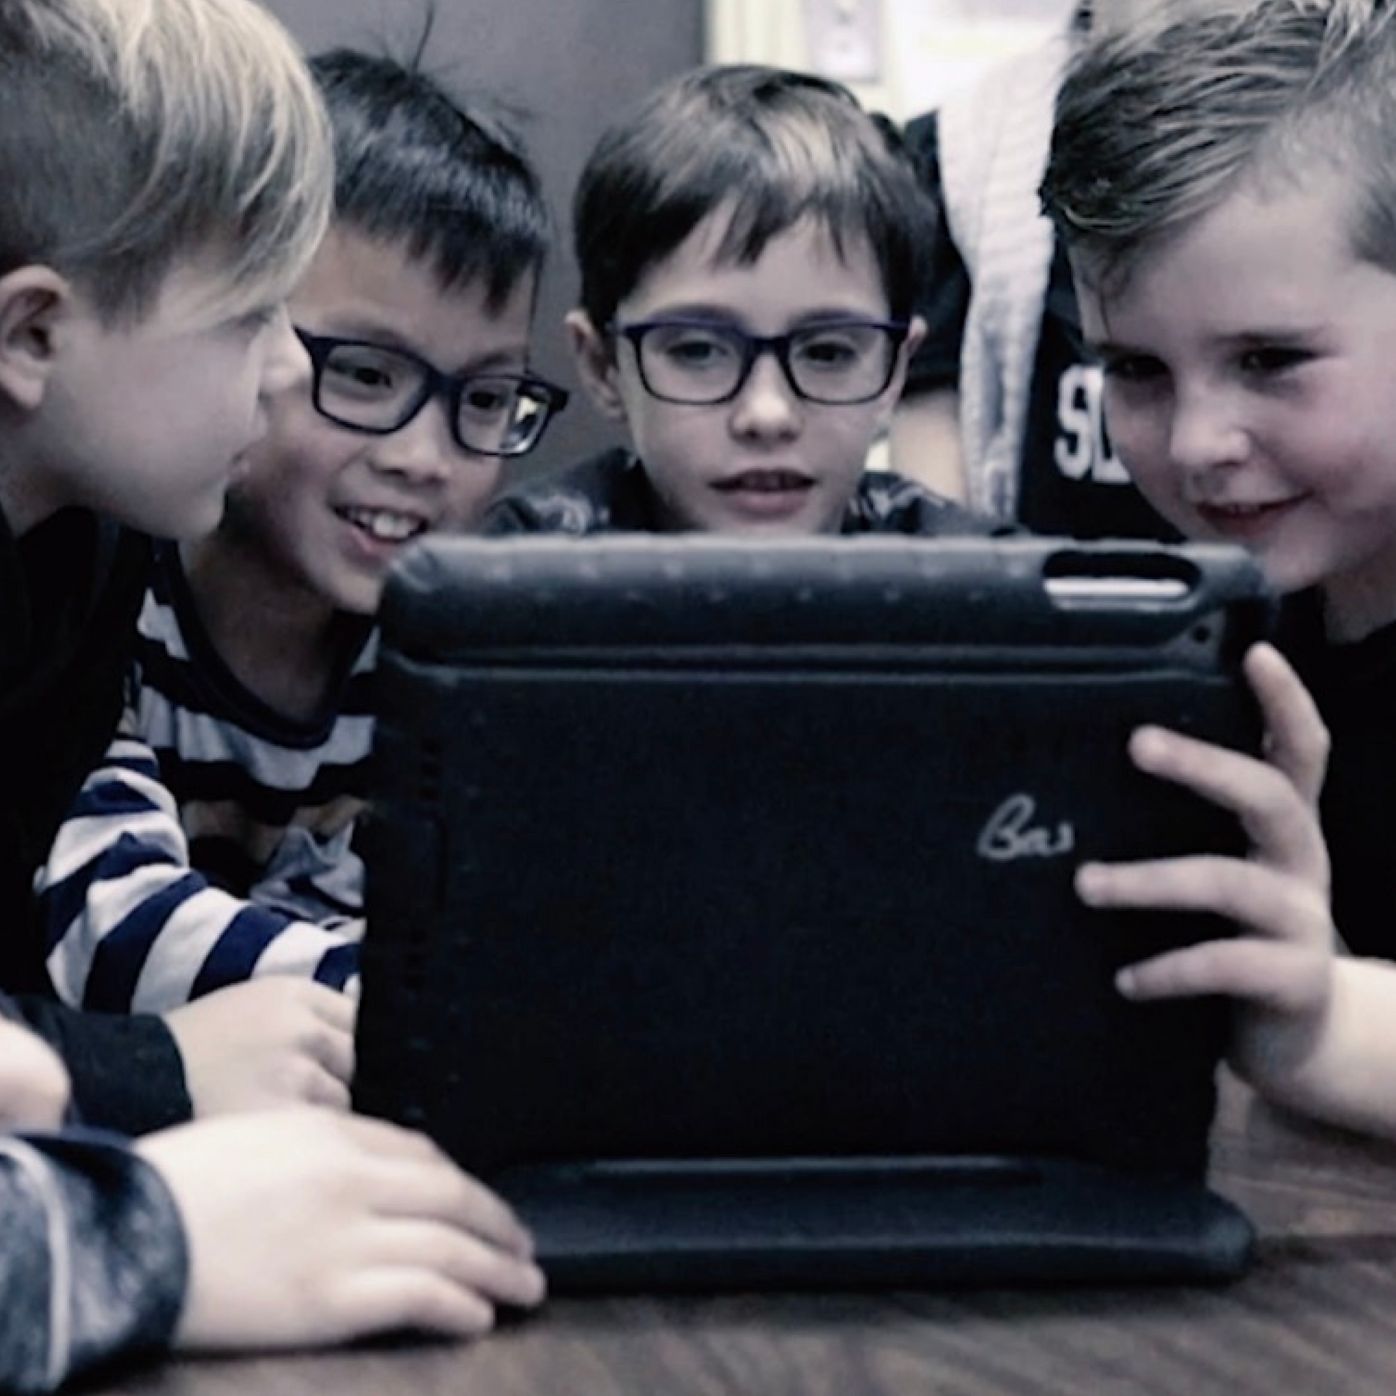 Groupe d'enfants qui visionne du contenu sur une tablette